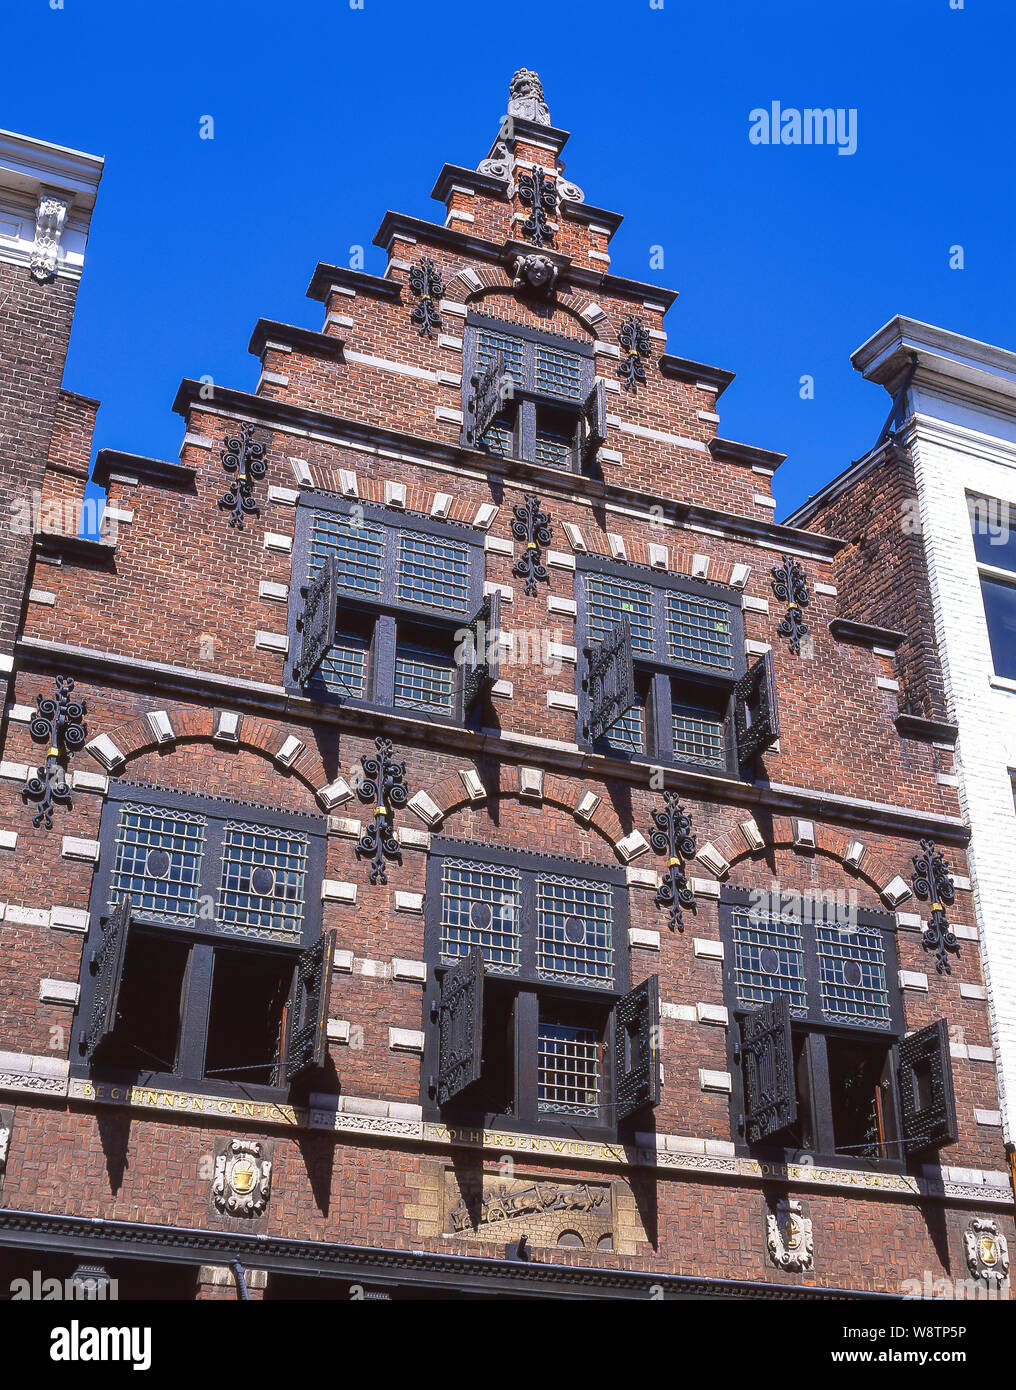 Persianas de fachada de edificio de época, Grote Markt, Haarlem, Noord-Holland, Reino de los Países Bajos Foto de stock